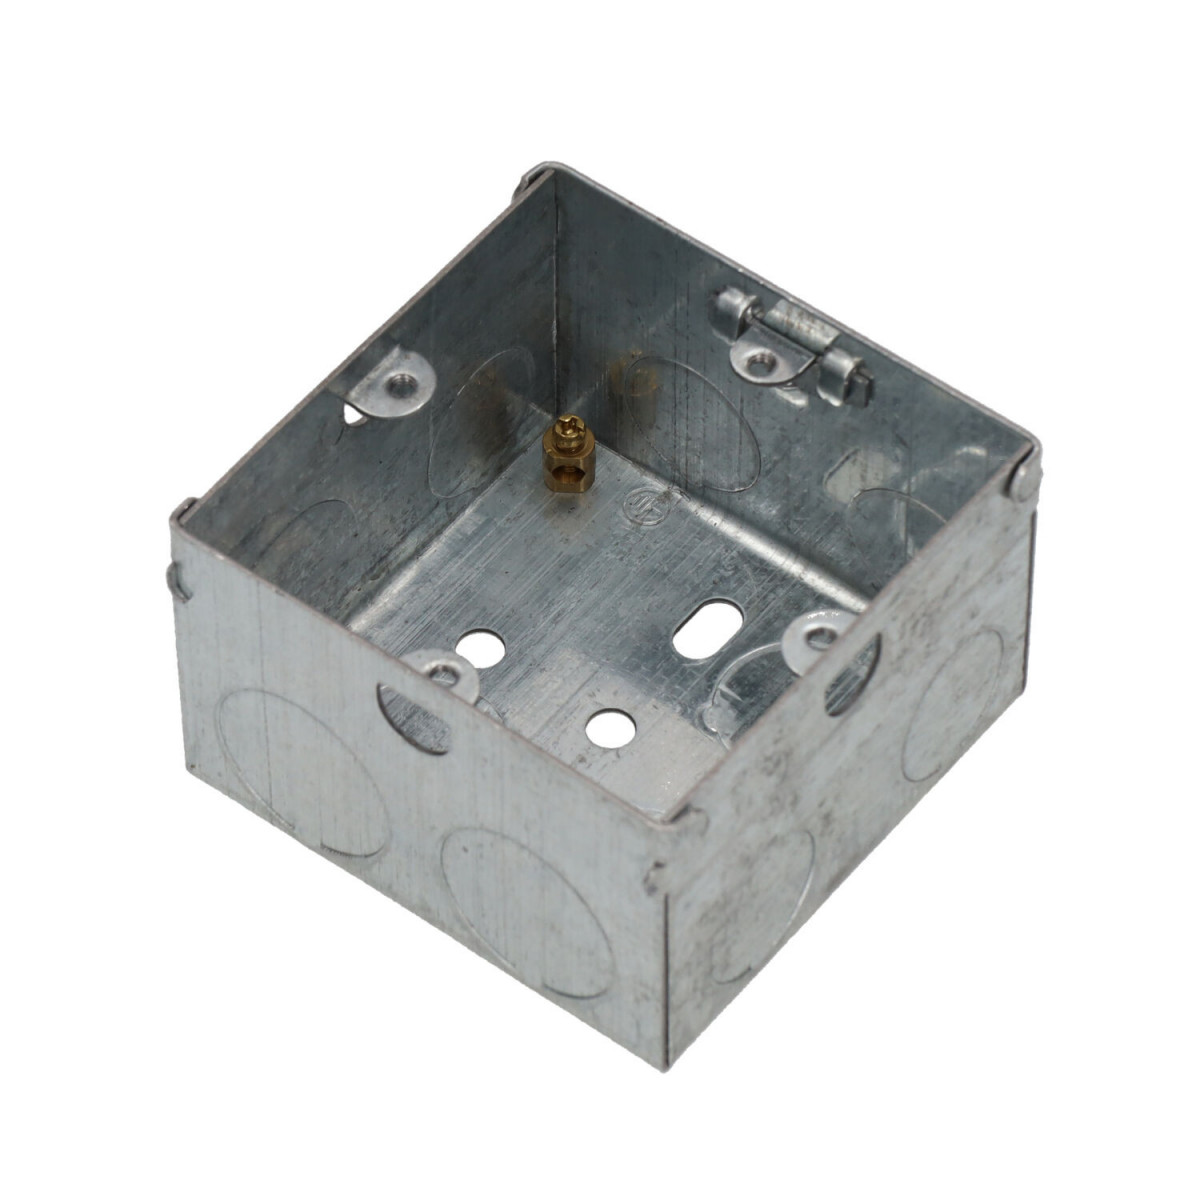 Superfície da caixa do mecanismo galvanizado